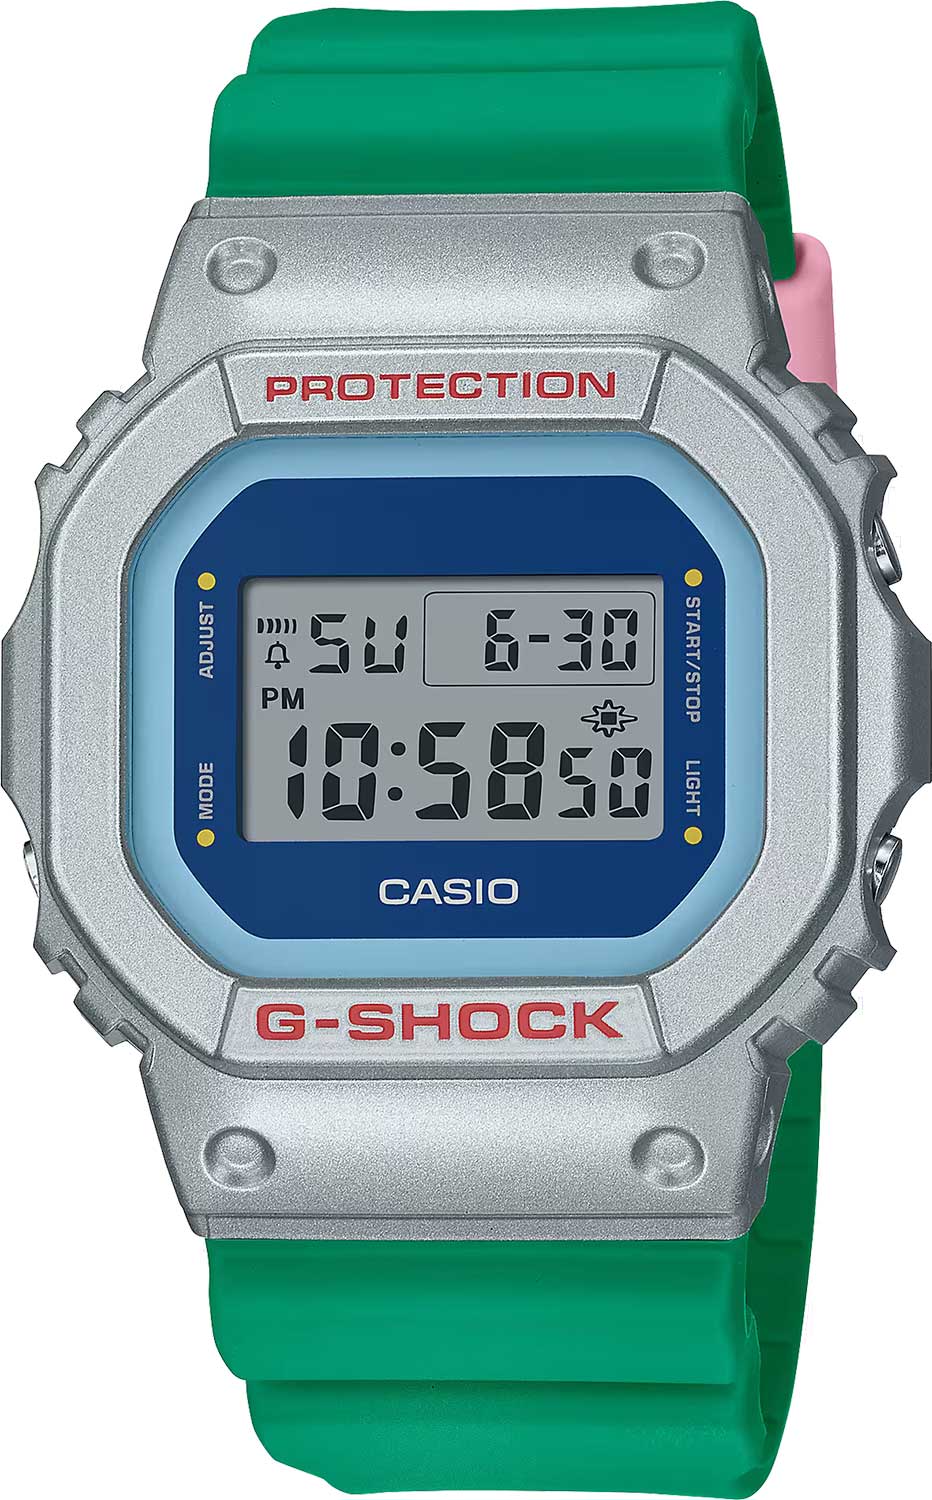    Casio G-SHOCK DW-5600EU-8A3  